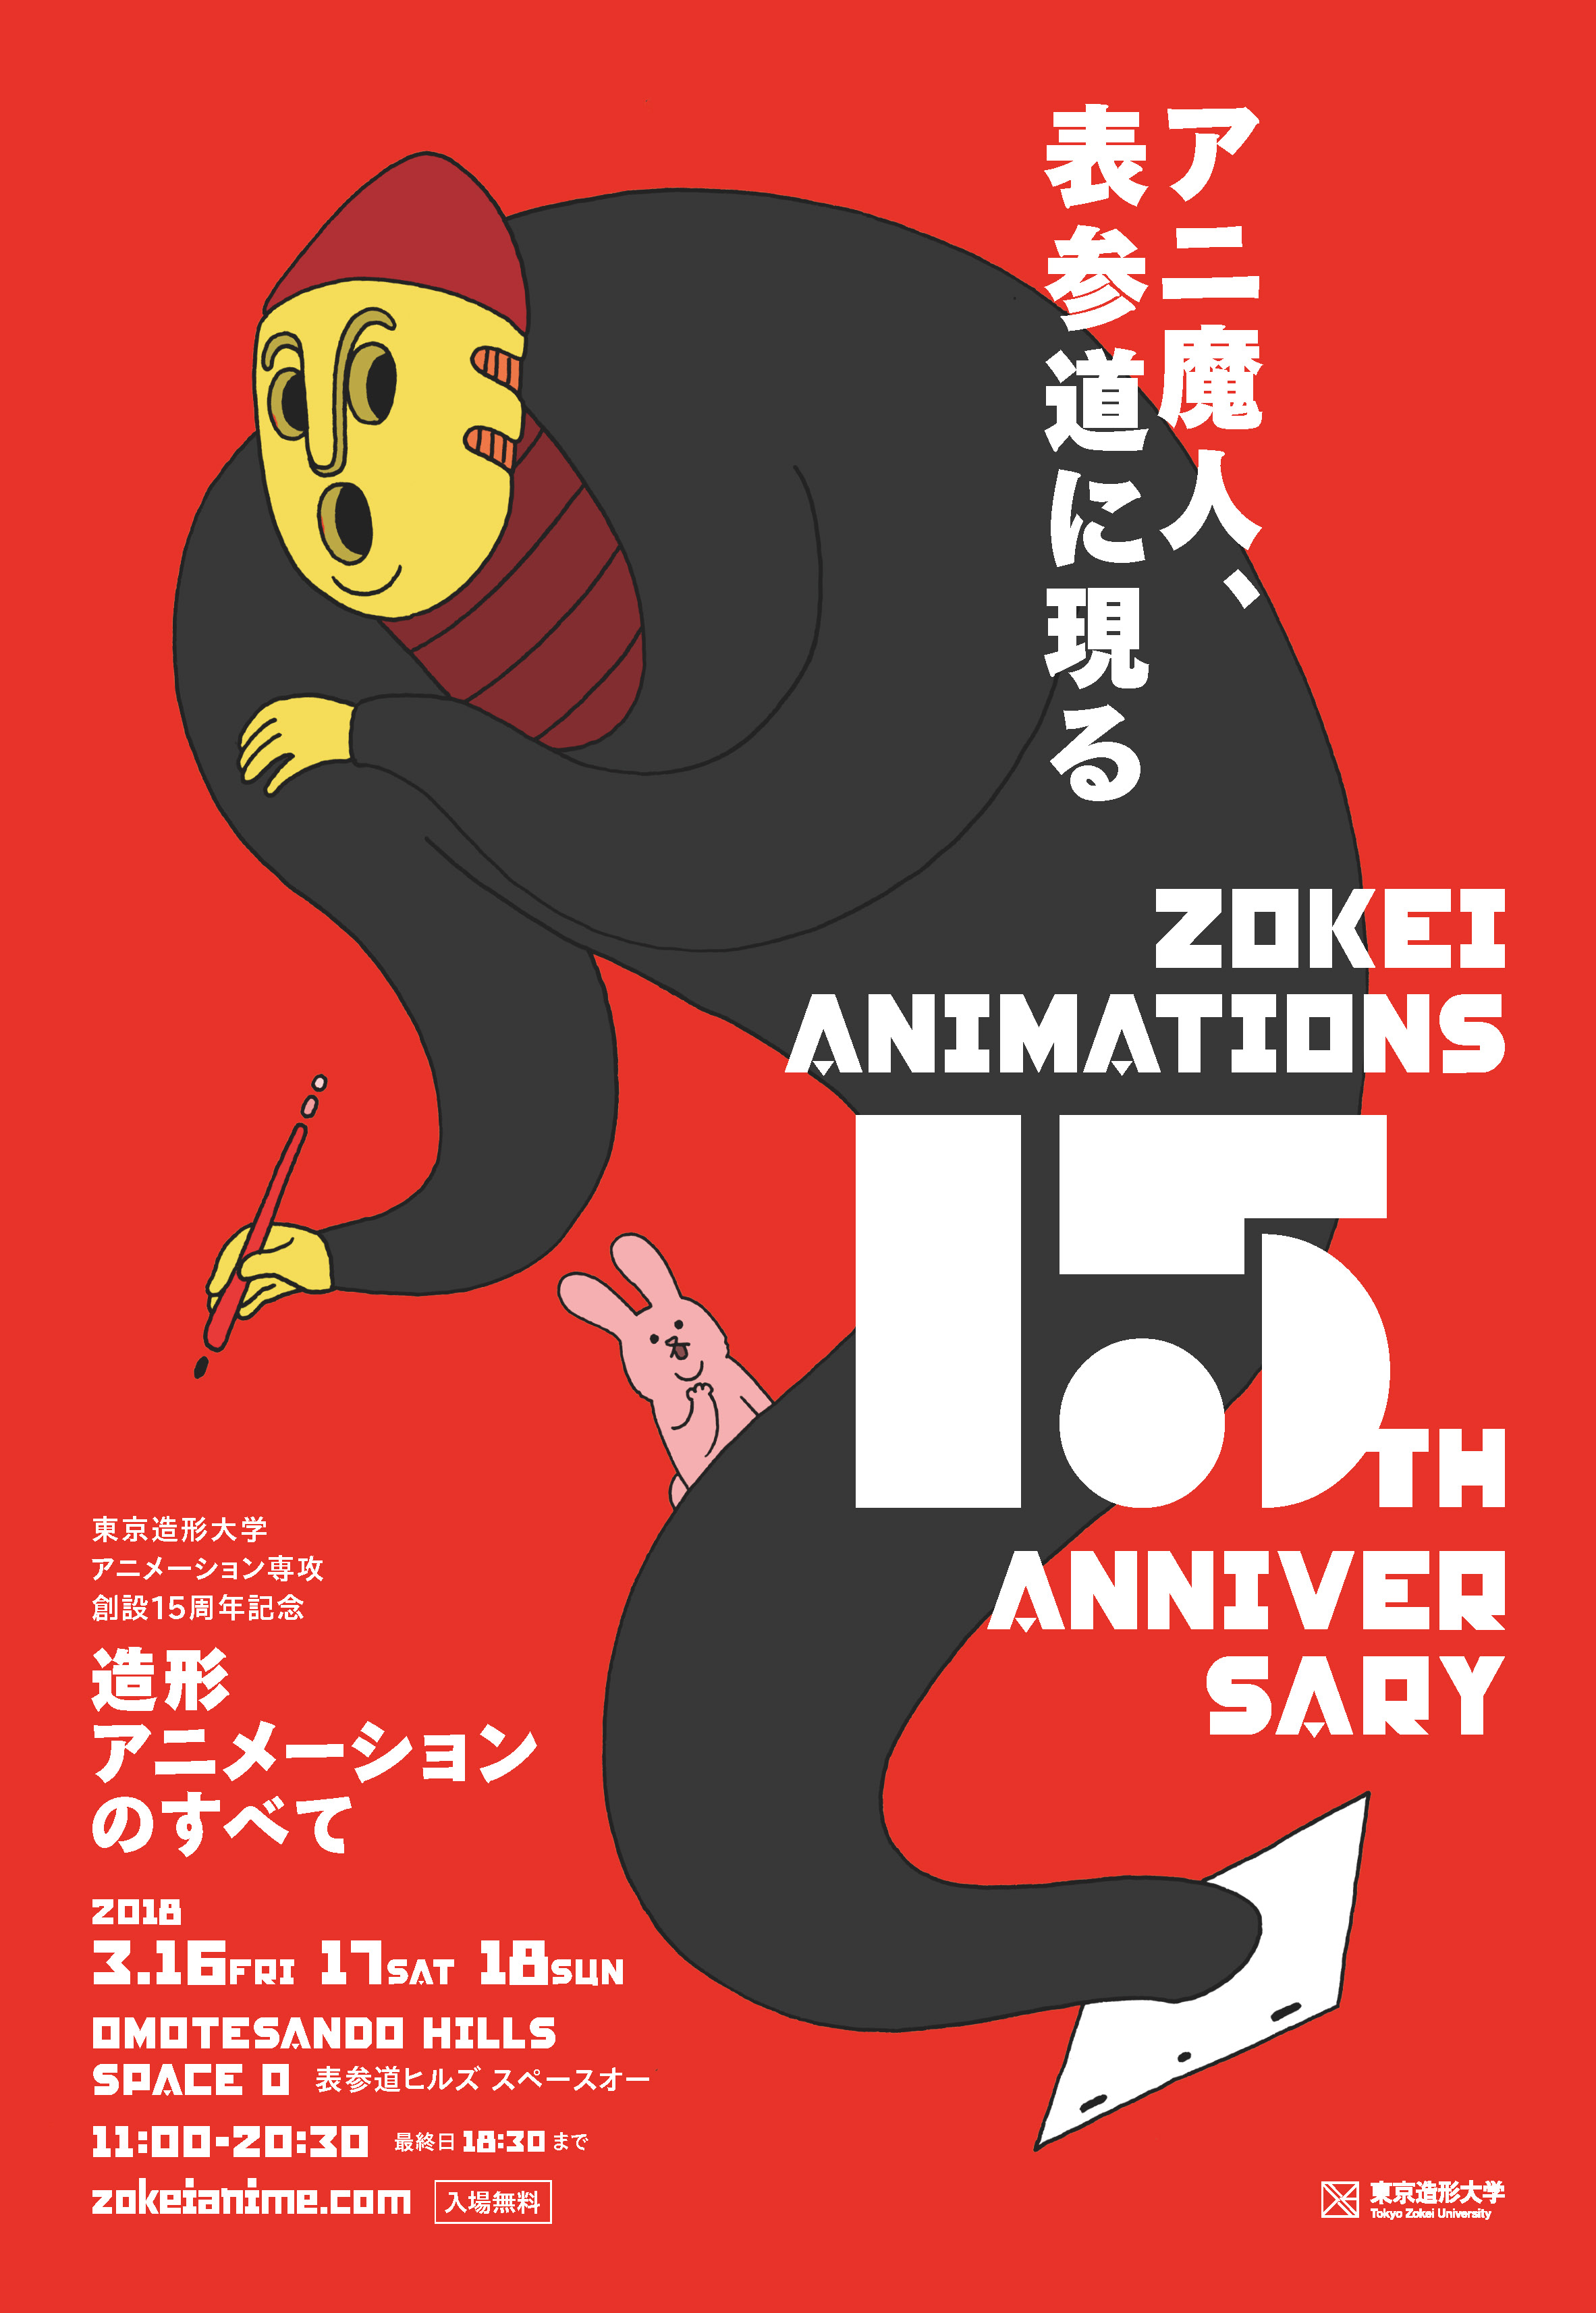 アニ魔人が表参道に現る 東京造形大学 アニメーション専攻領域創設15周年記念 造形アニメーションのすべて を開催 東京造形大学のプレスリリース